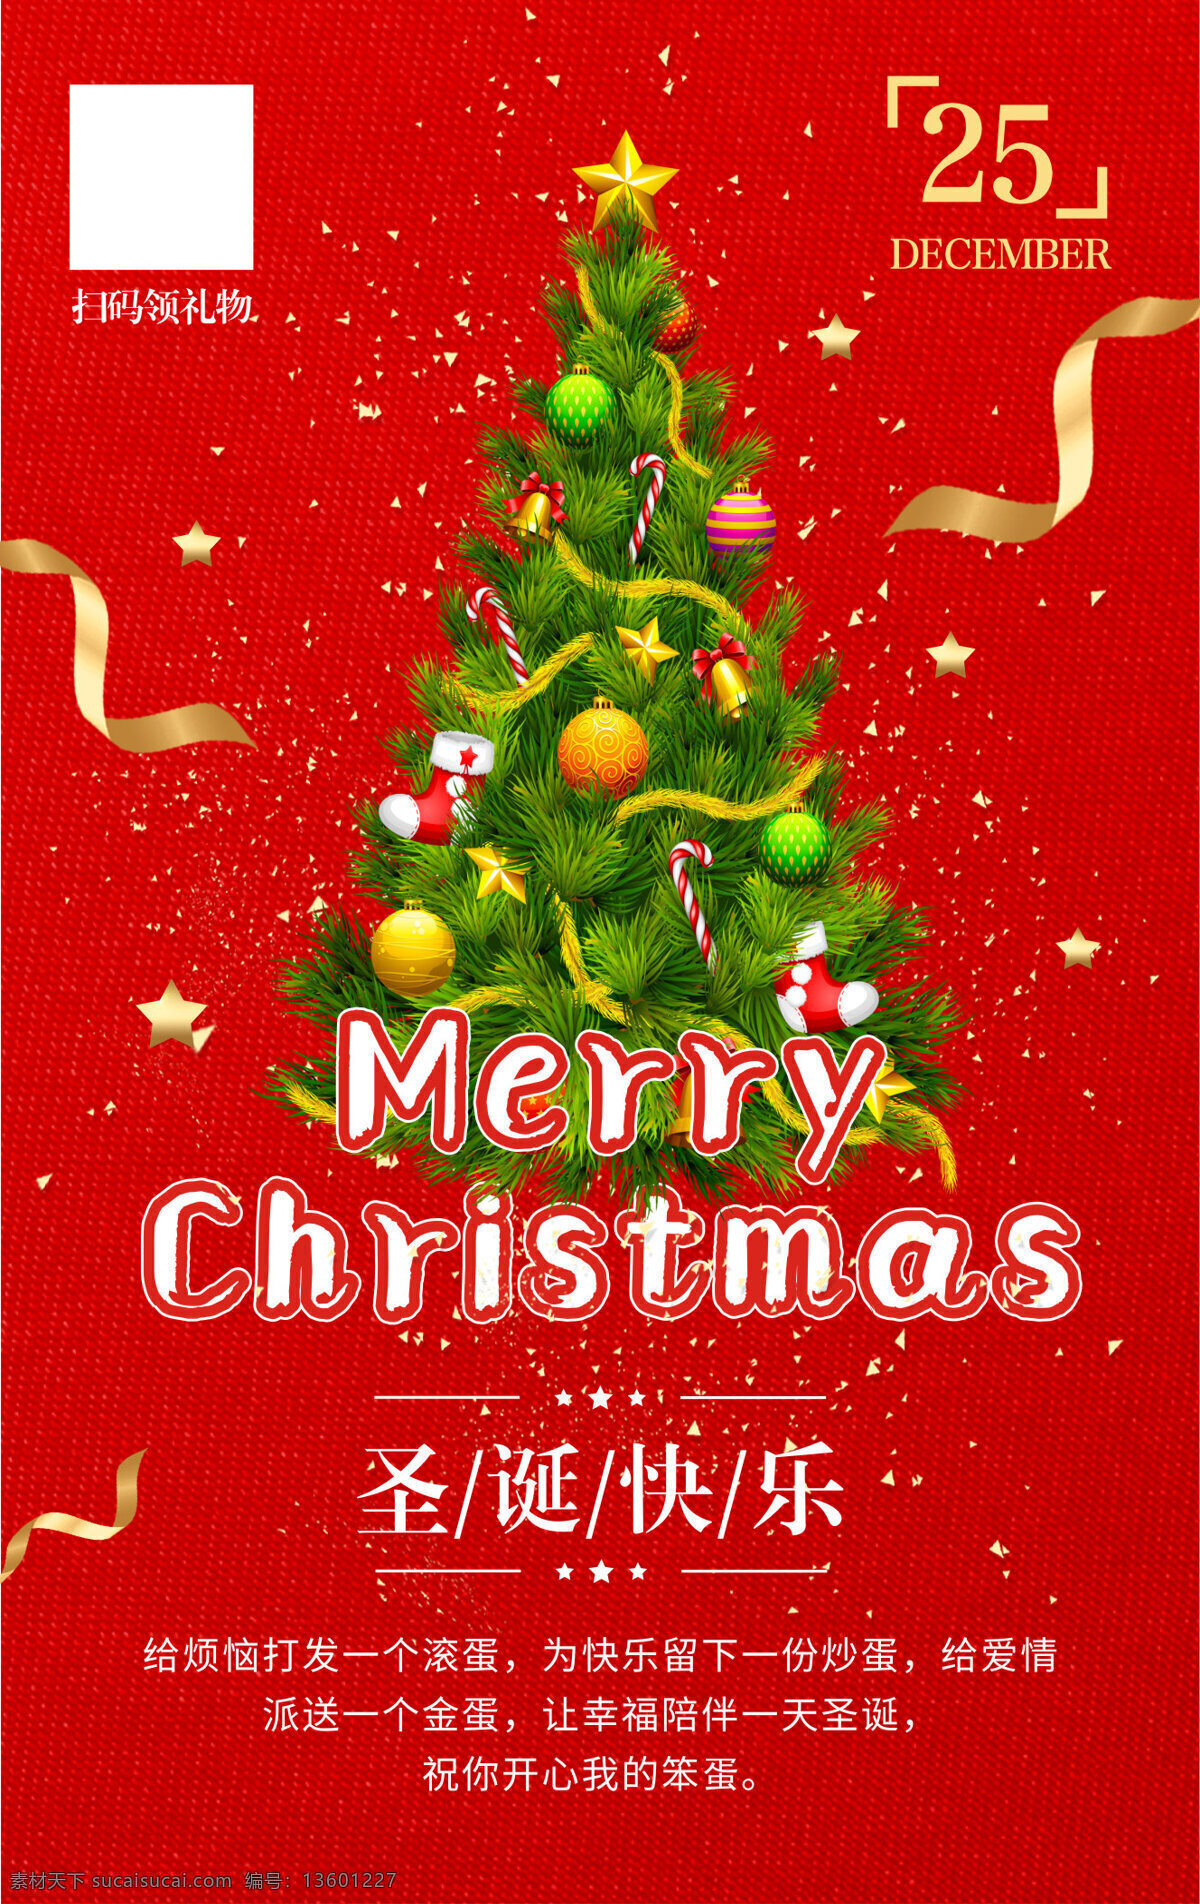 圣诞节 海报 元素 模版 红色 节日 圣诞树 喜庆